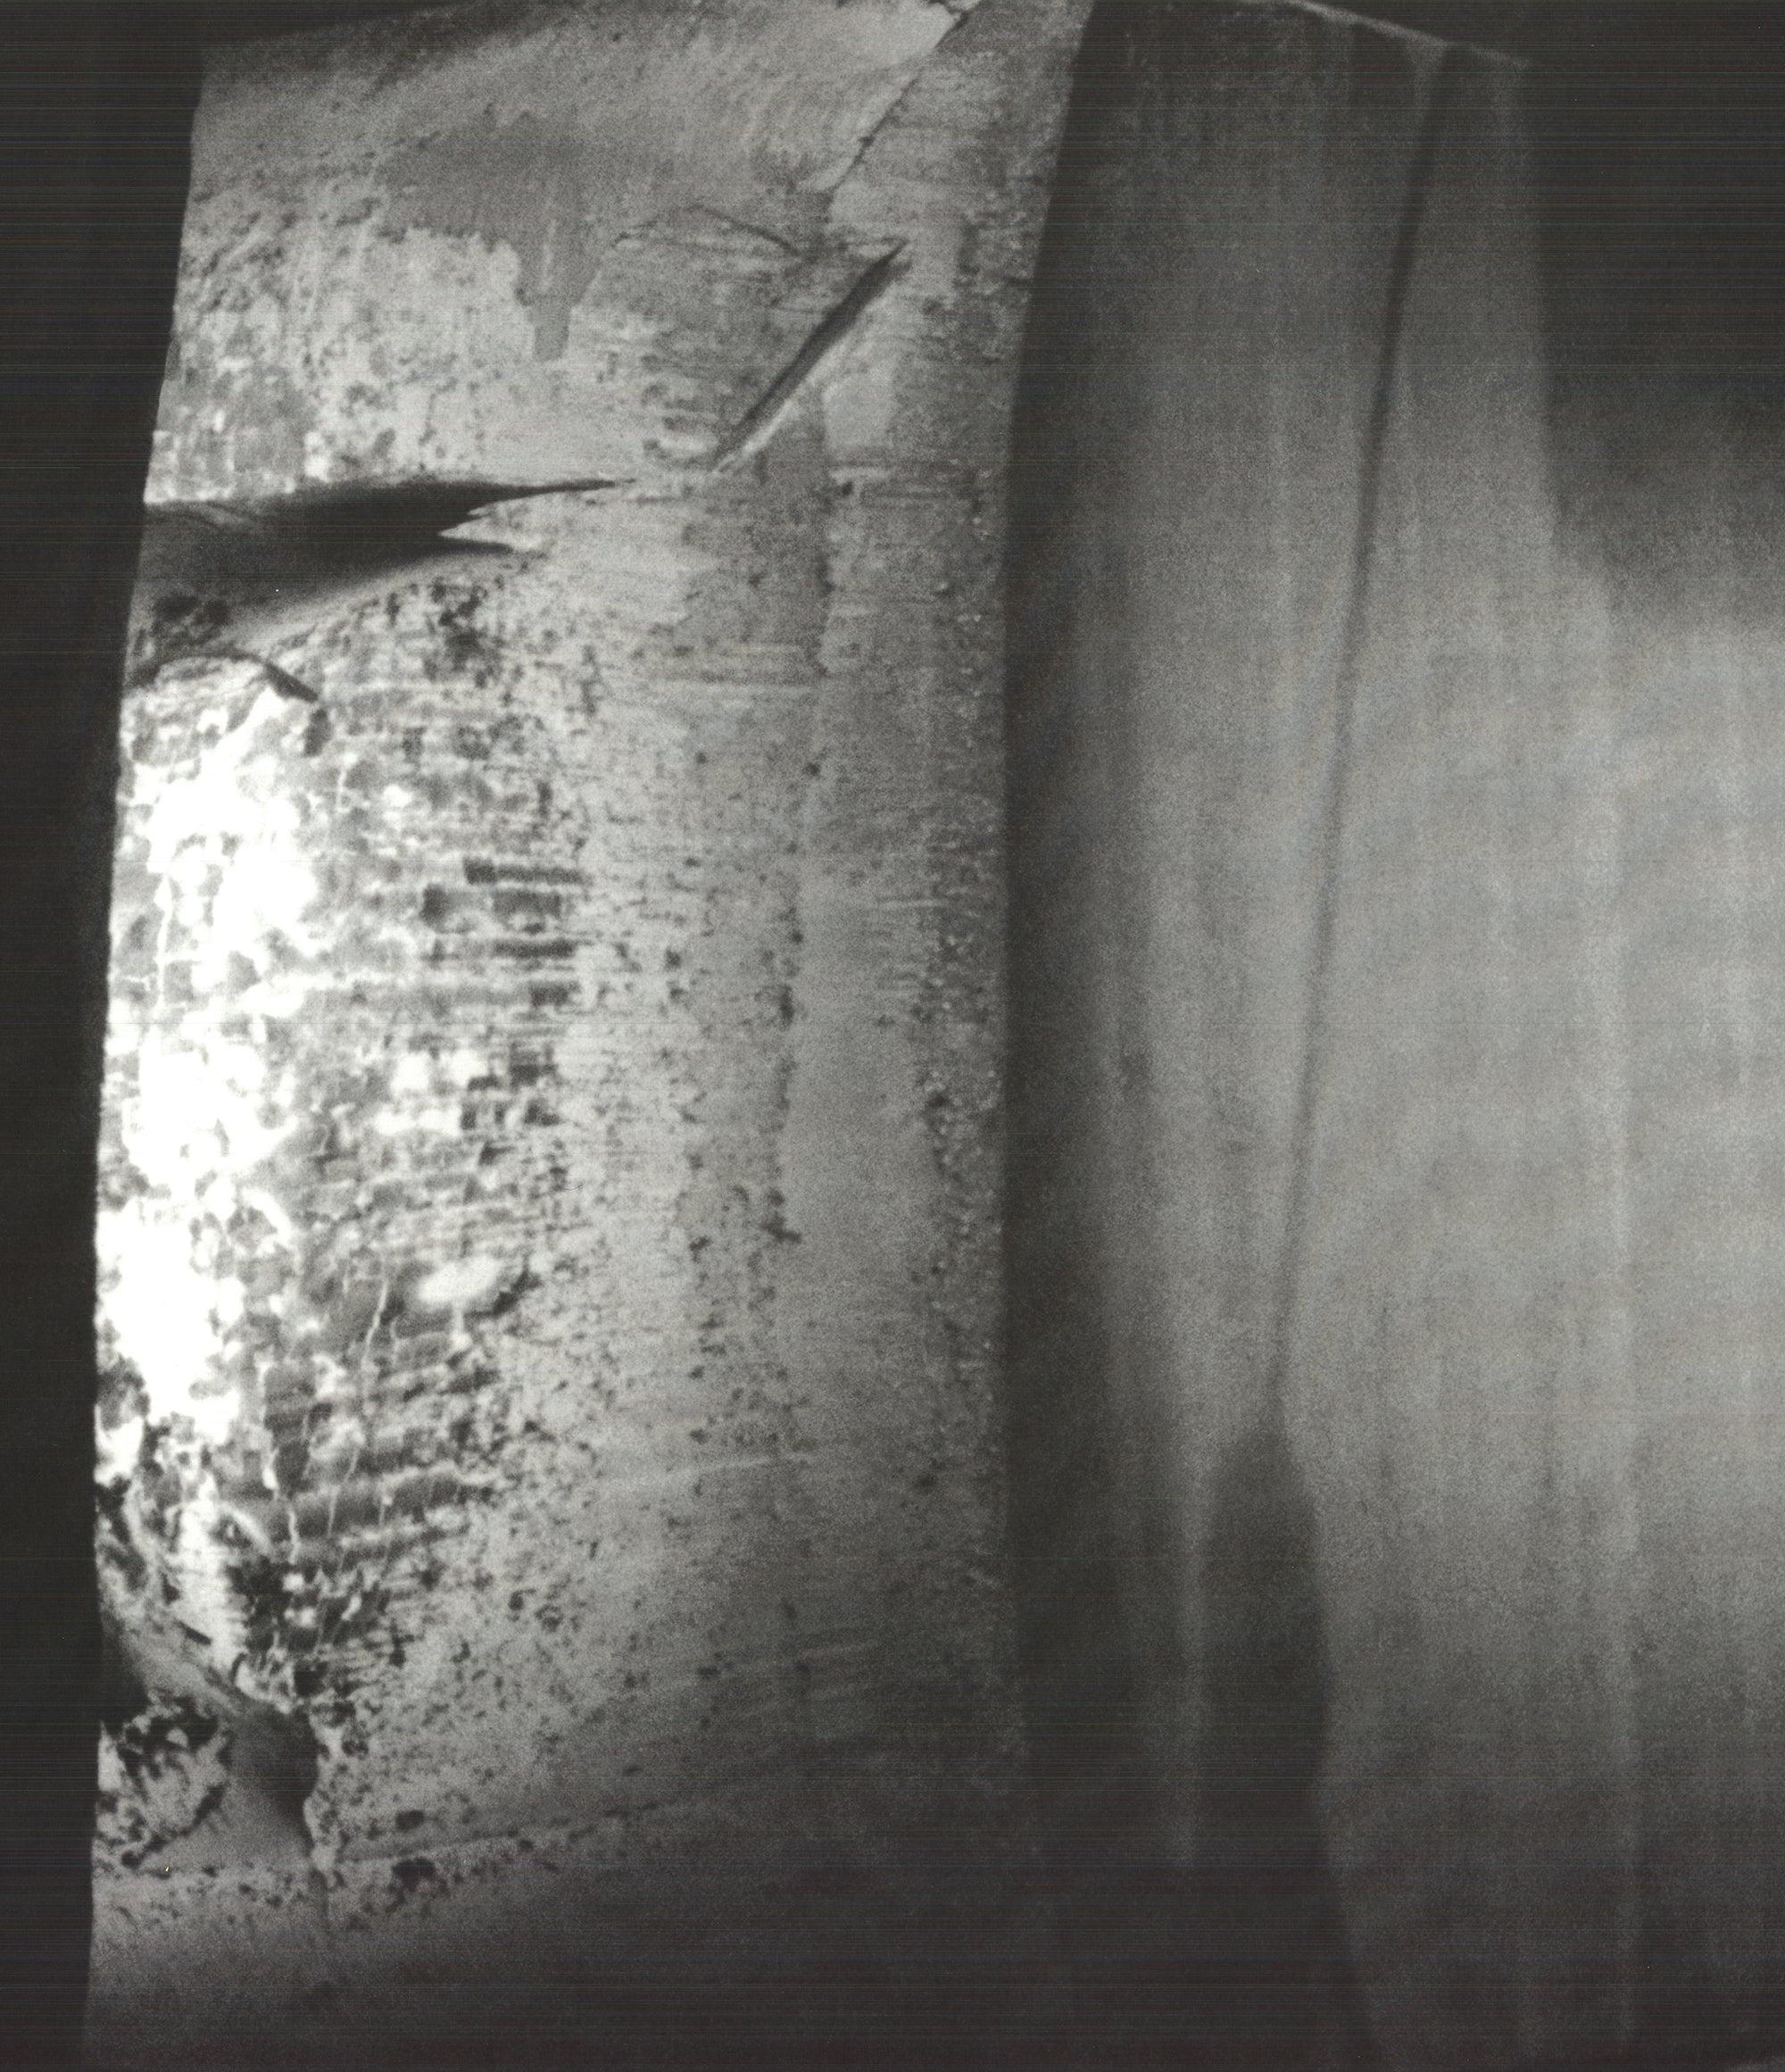 Lithographie Offset de Richard Serra « Rolled and Forged » (Roulé et forgé) 2006 - Signé 4